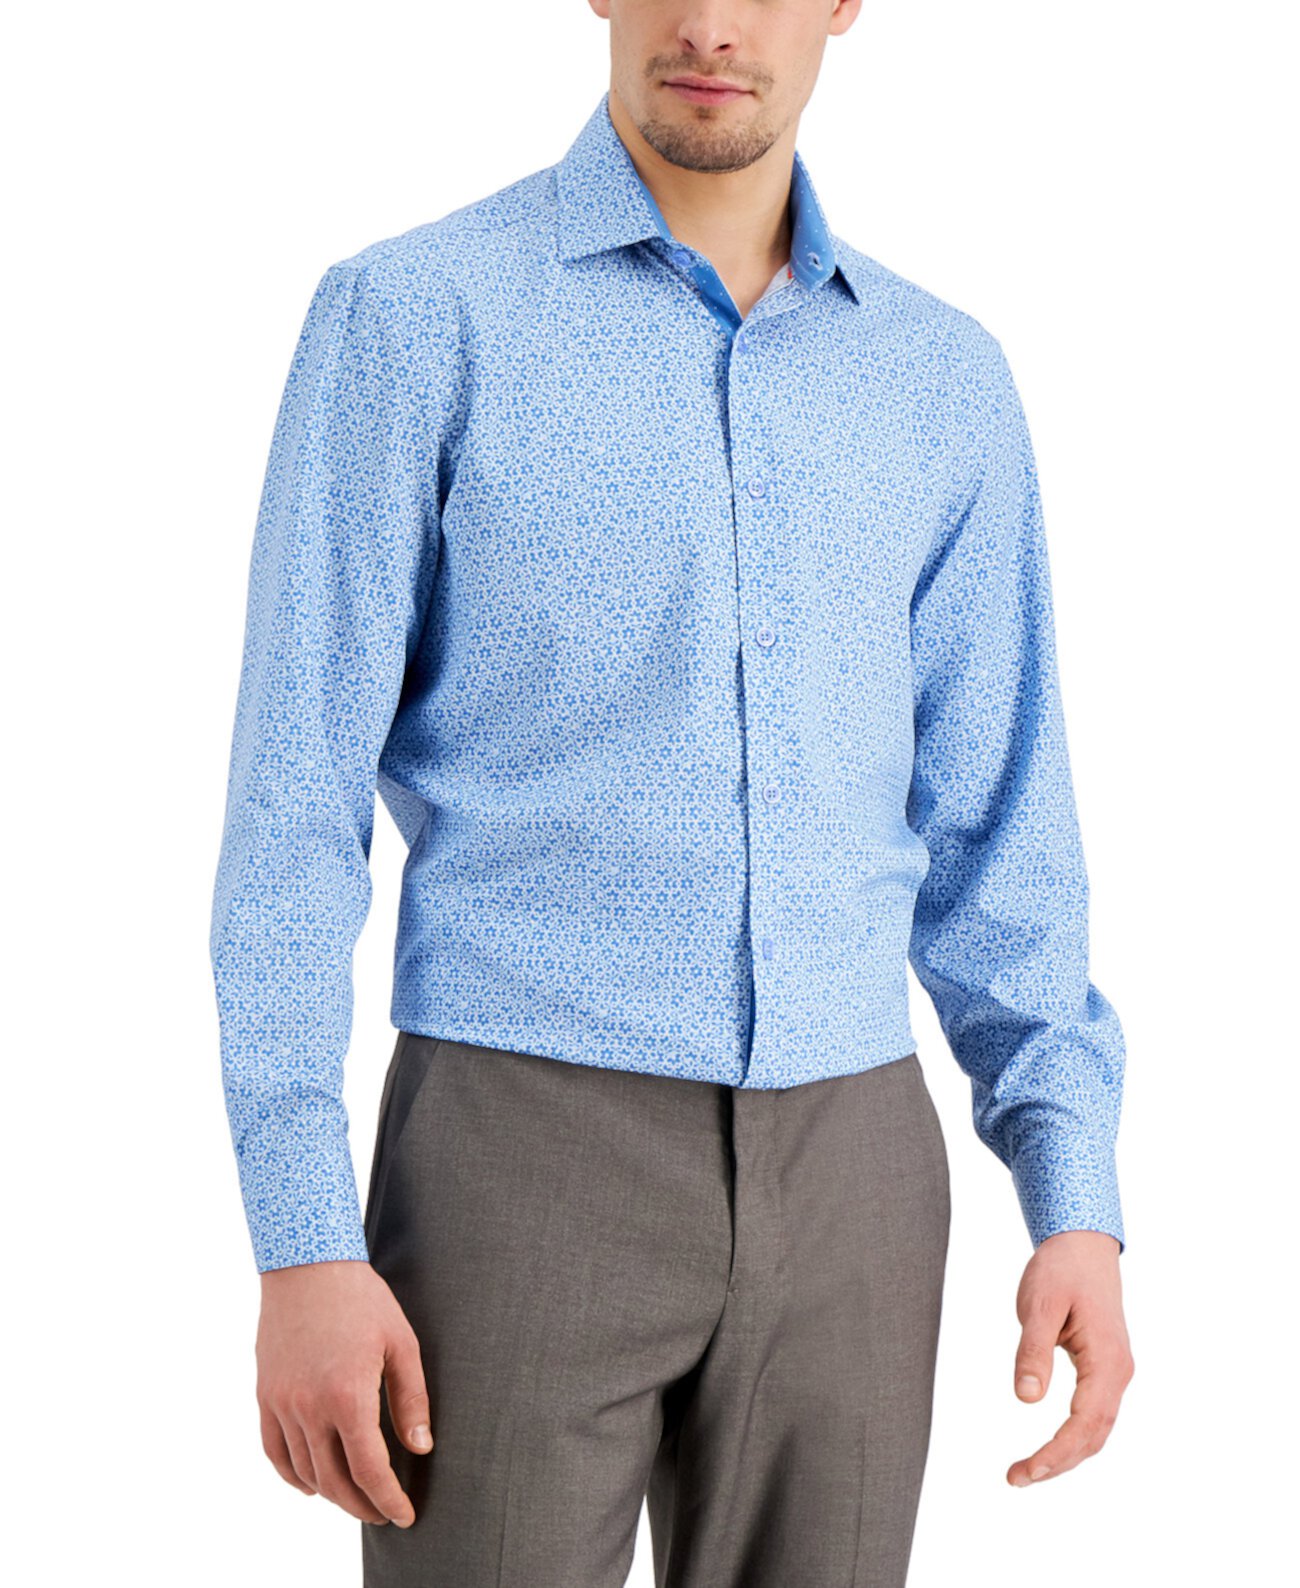 Мужская приталенная классическая рубашка из эластичного эластичного материала с цветочным принтом и плиссированной маской для лица Tallia